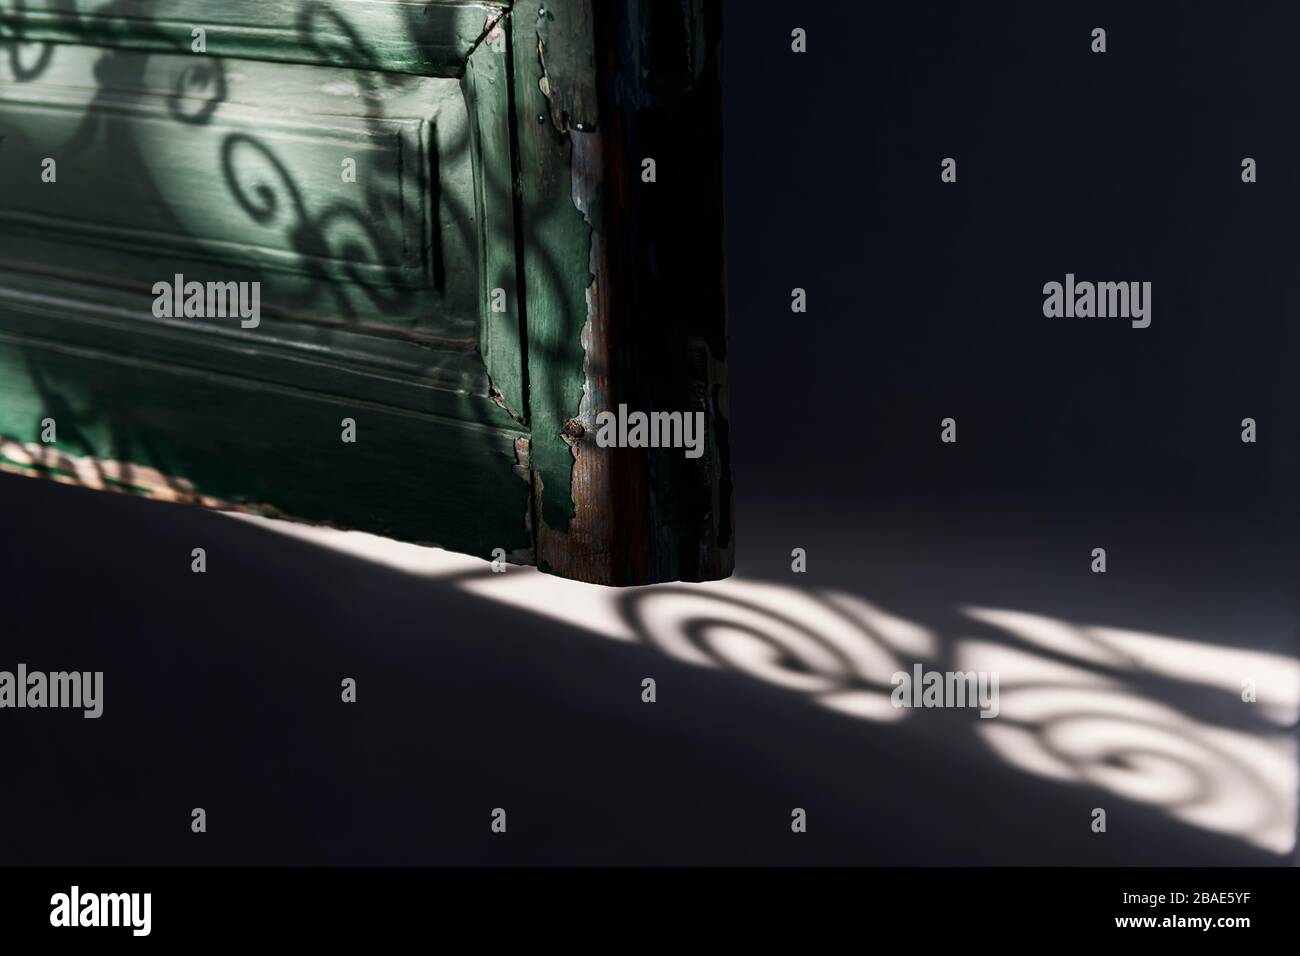 Ancienne fenêtre en bois (aveugle) avec ombres de grille marocaines. Image d'arrière-plan sombre. Banque D'Images